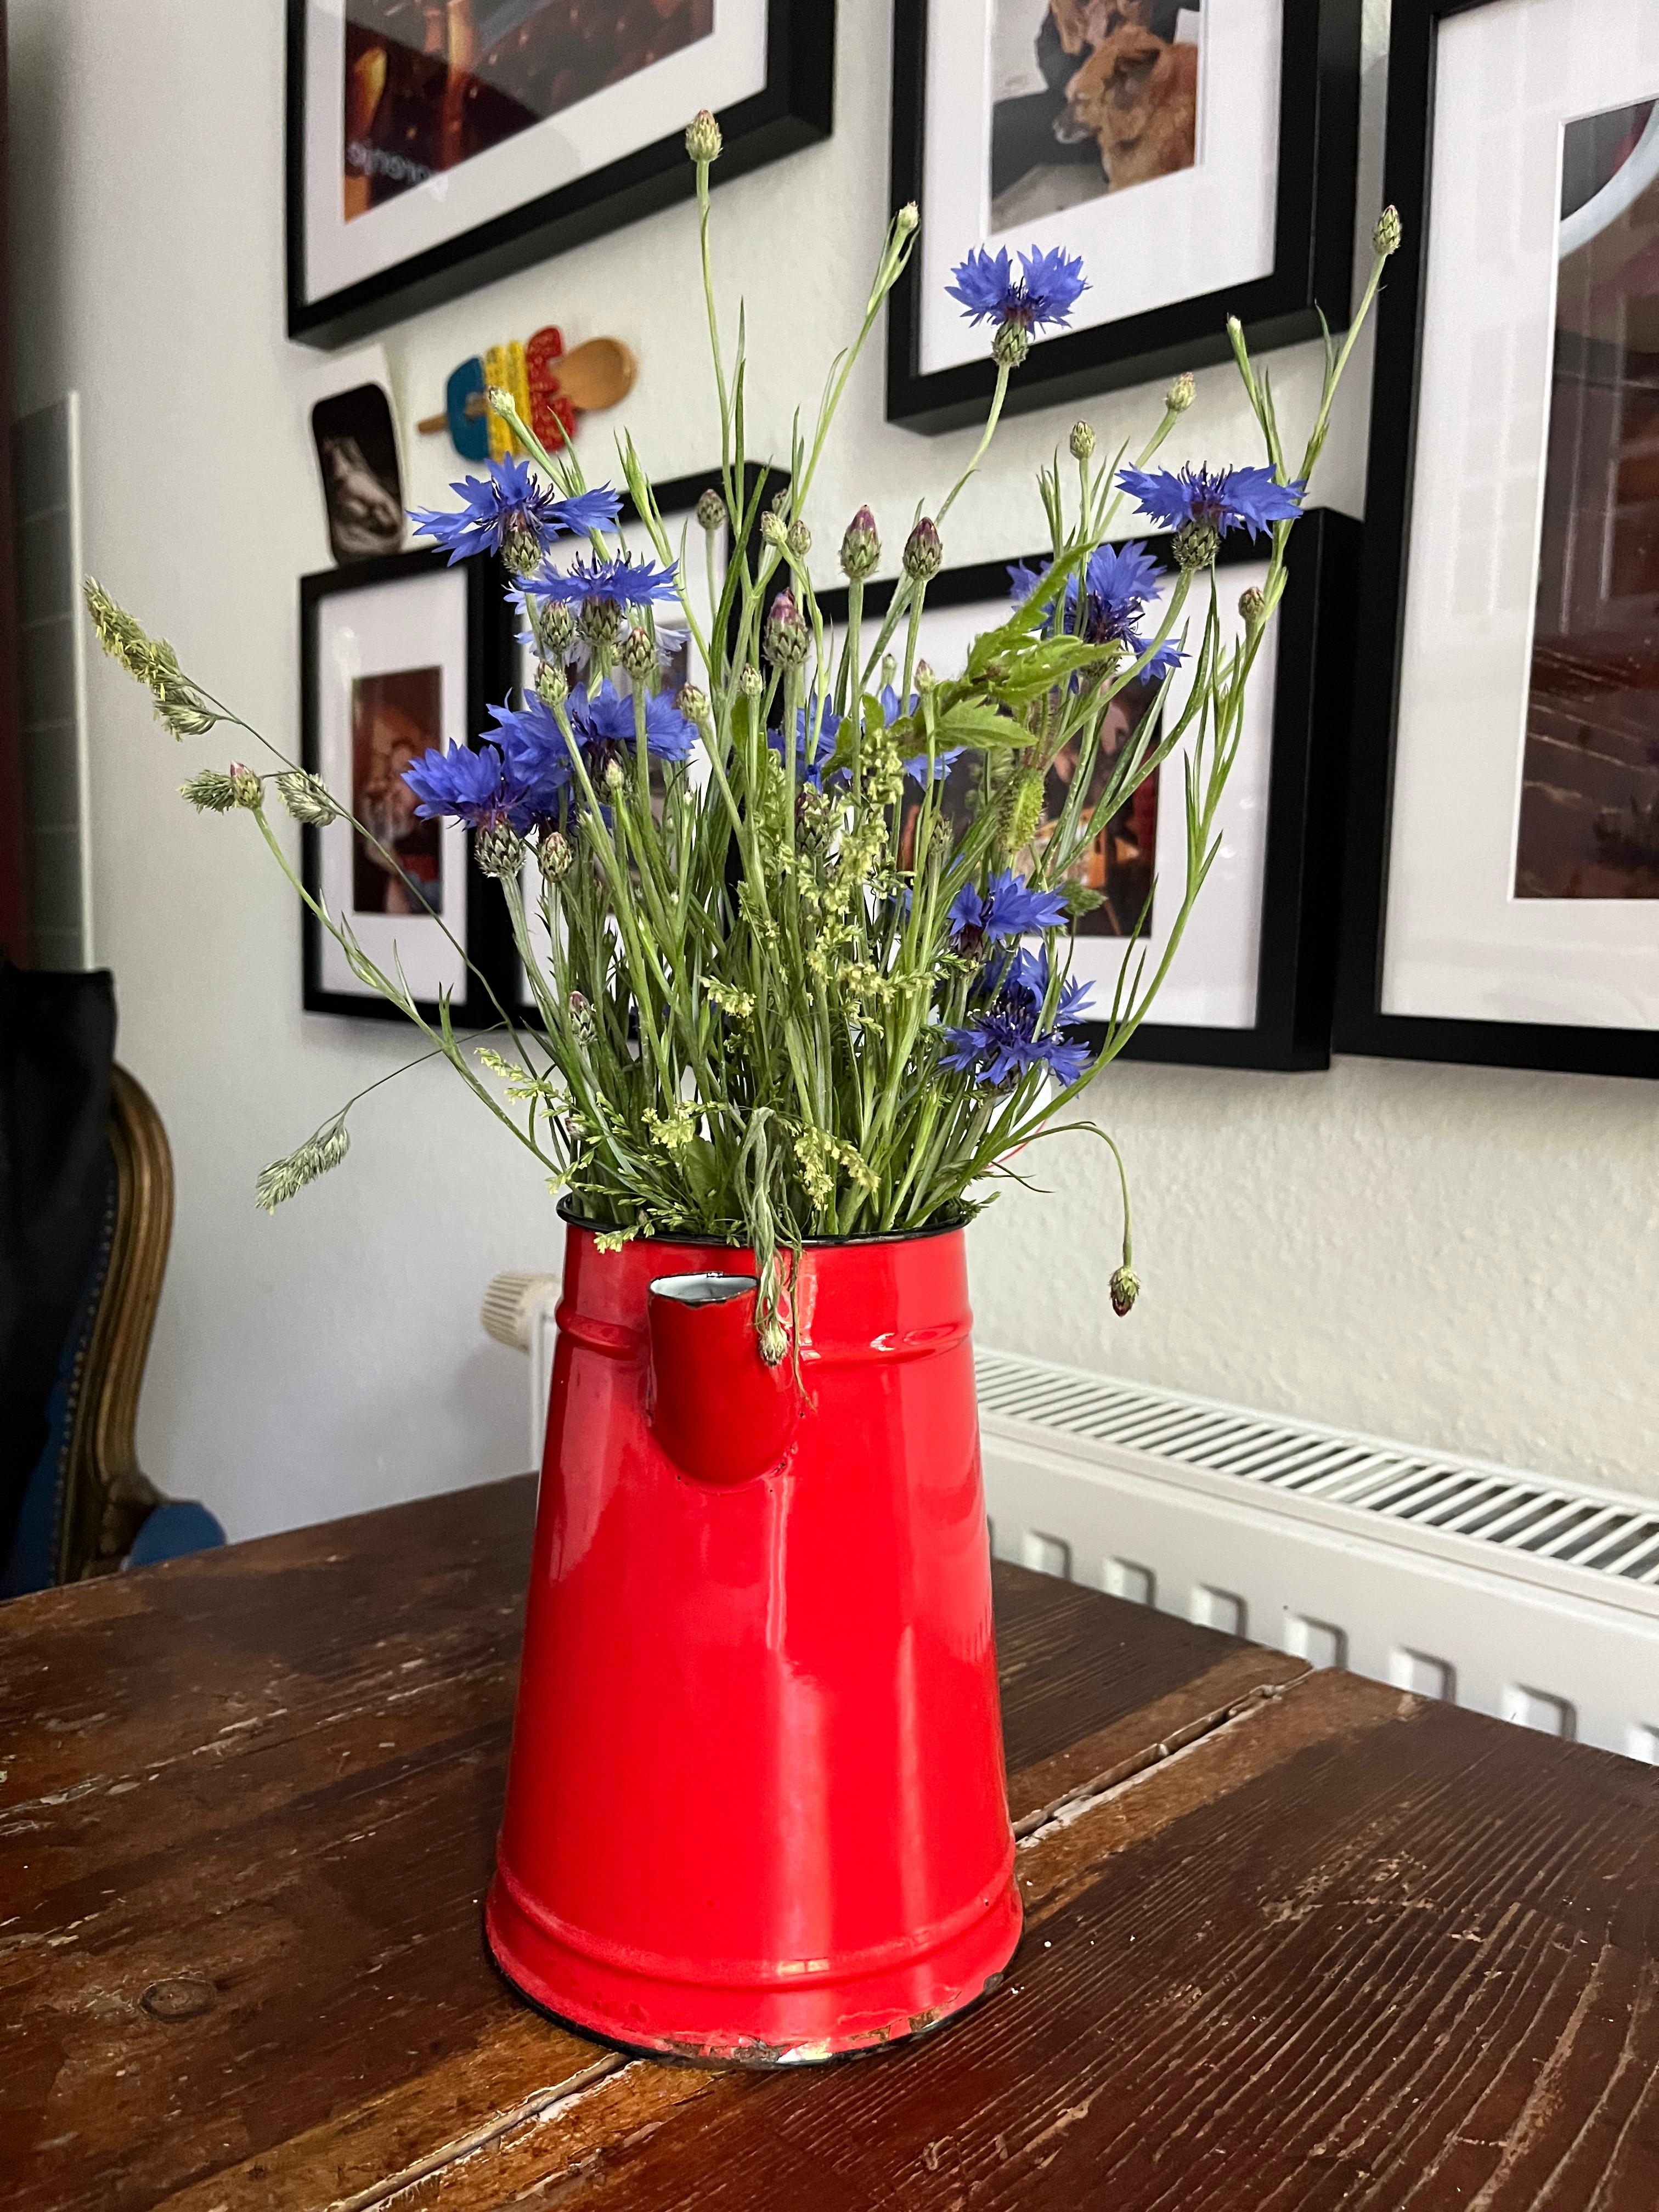 Zum Freitag ein schlichtes Sträußlein #kornblumen #vase #kanne #weißeküche #landhausküche #wohnküche #kleineküche #küche